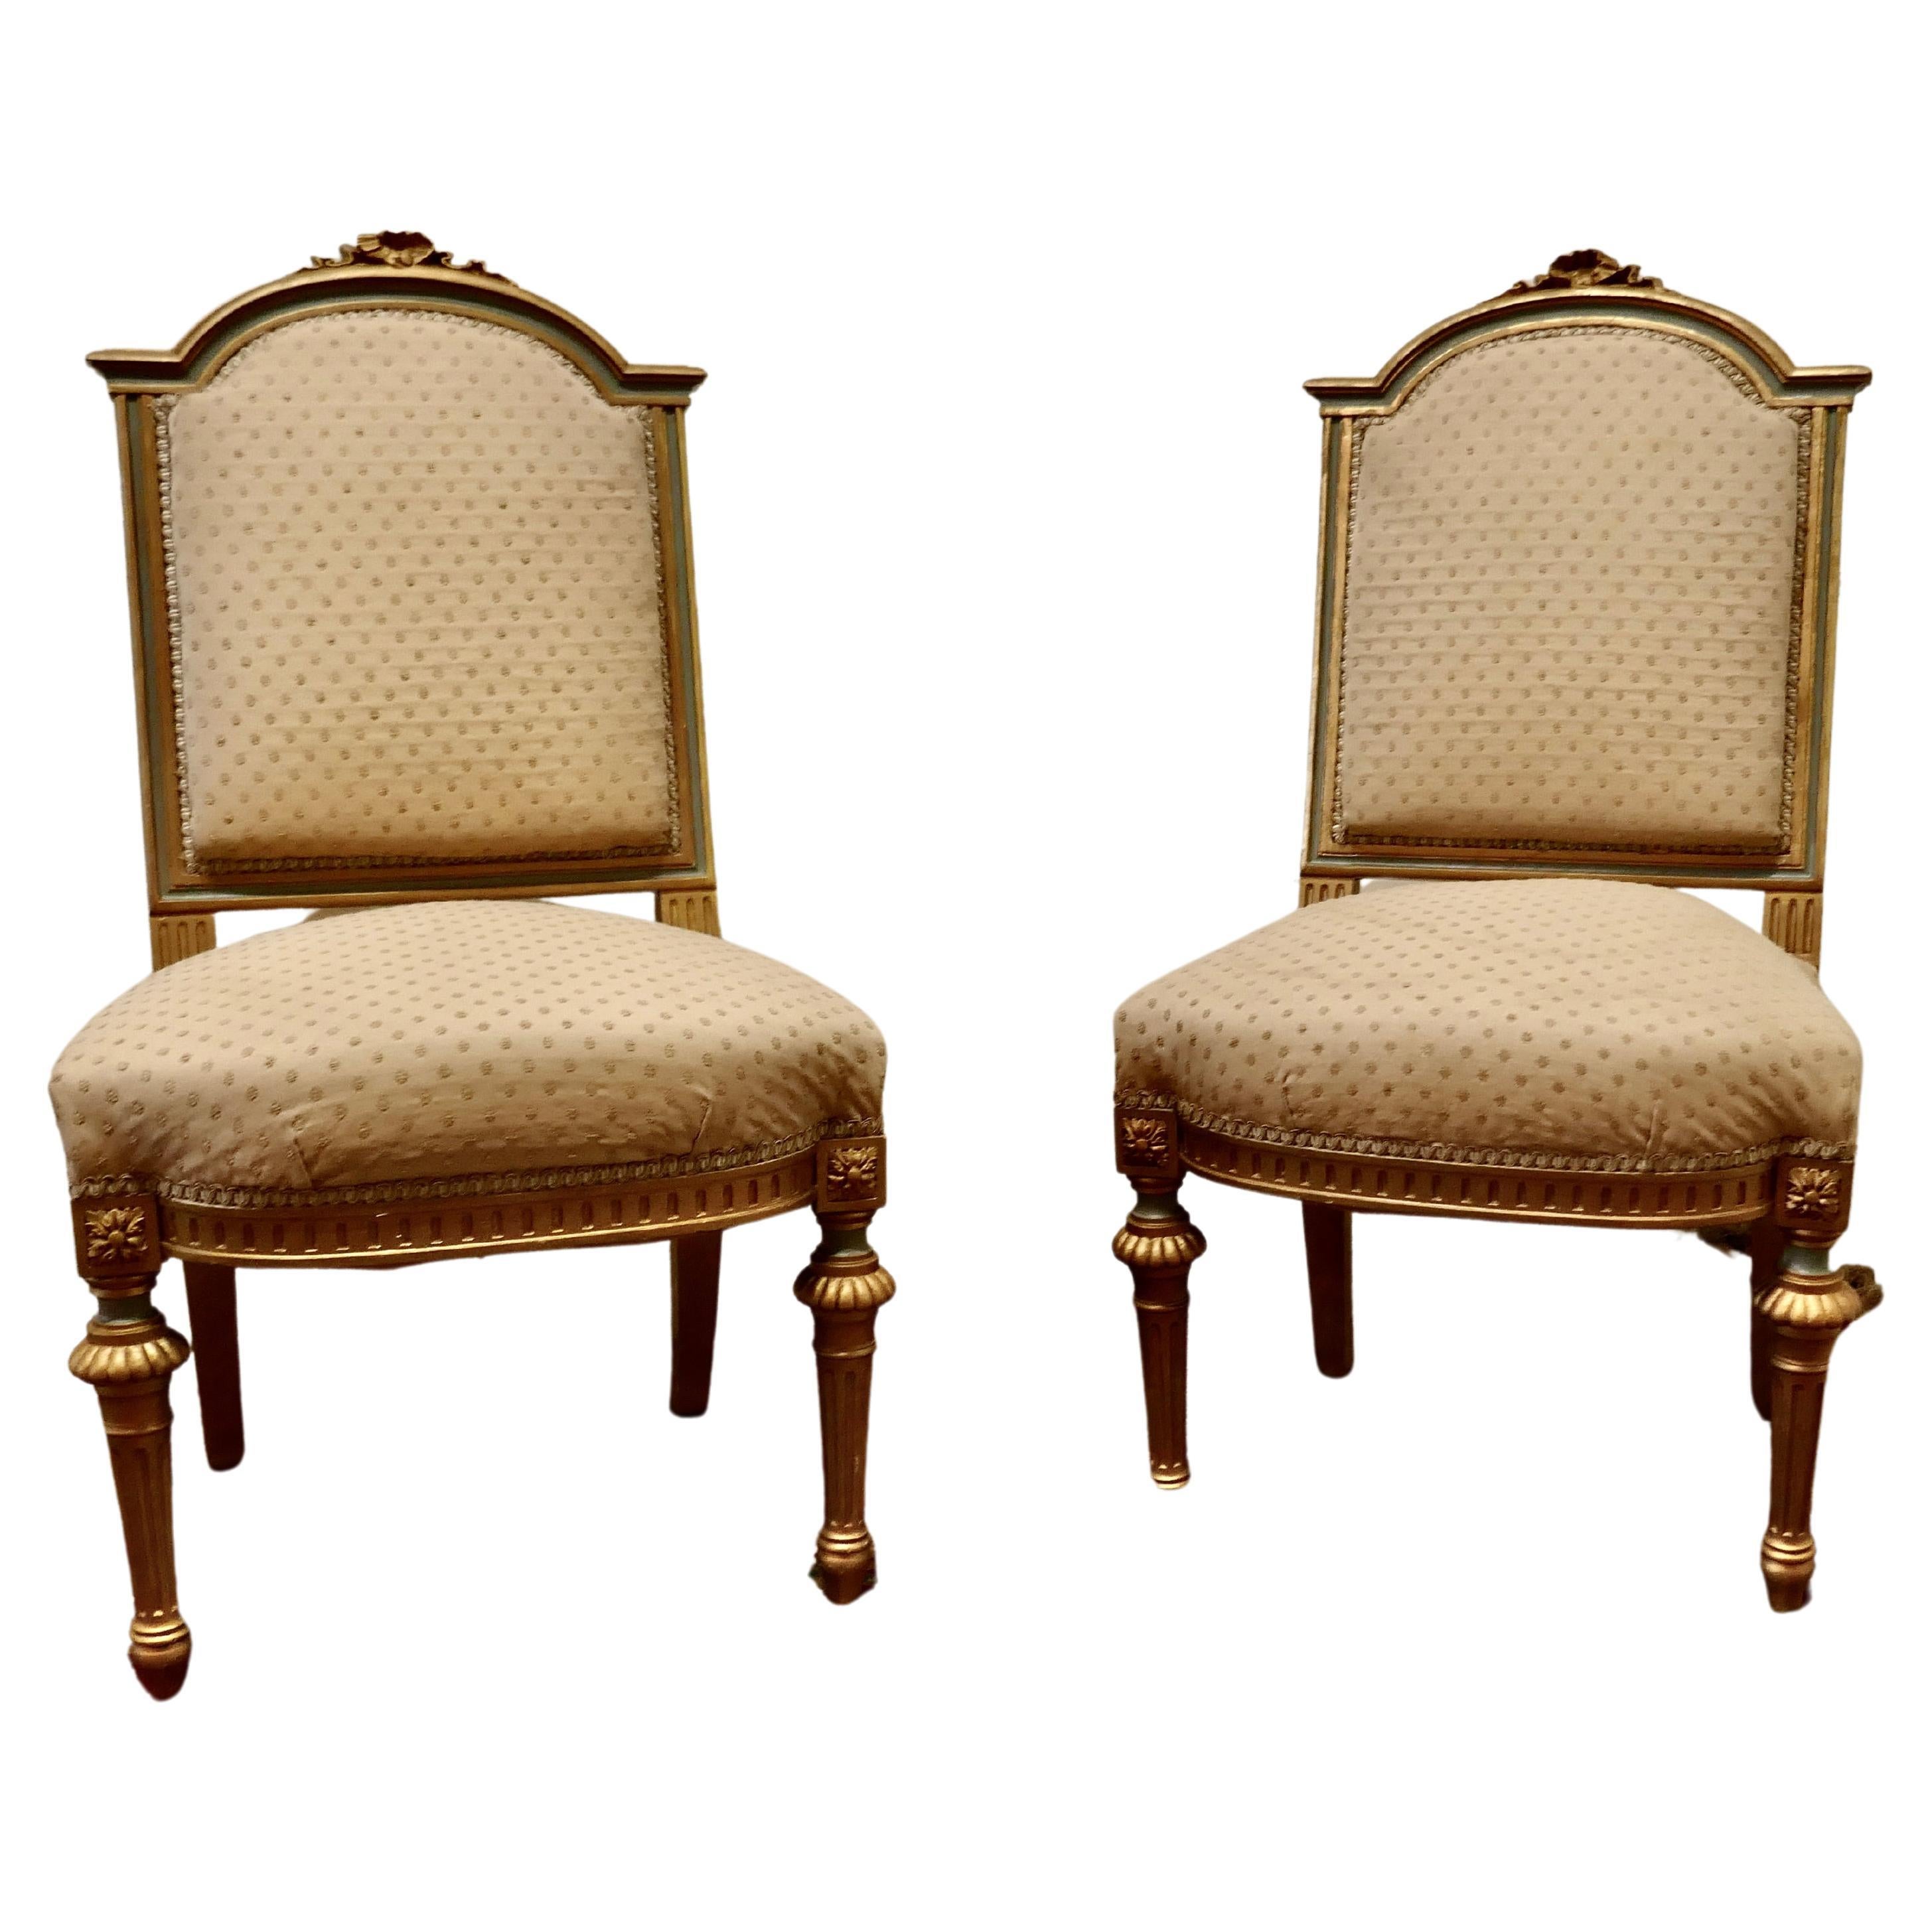 Paire de chaises de salon dorées de qualité supérieure datant d'environ 1880